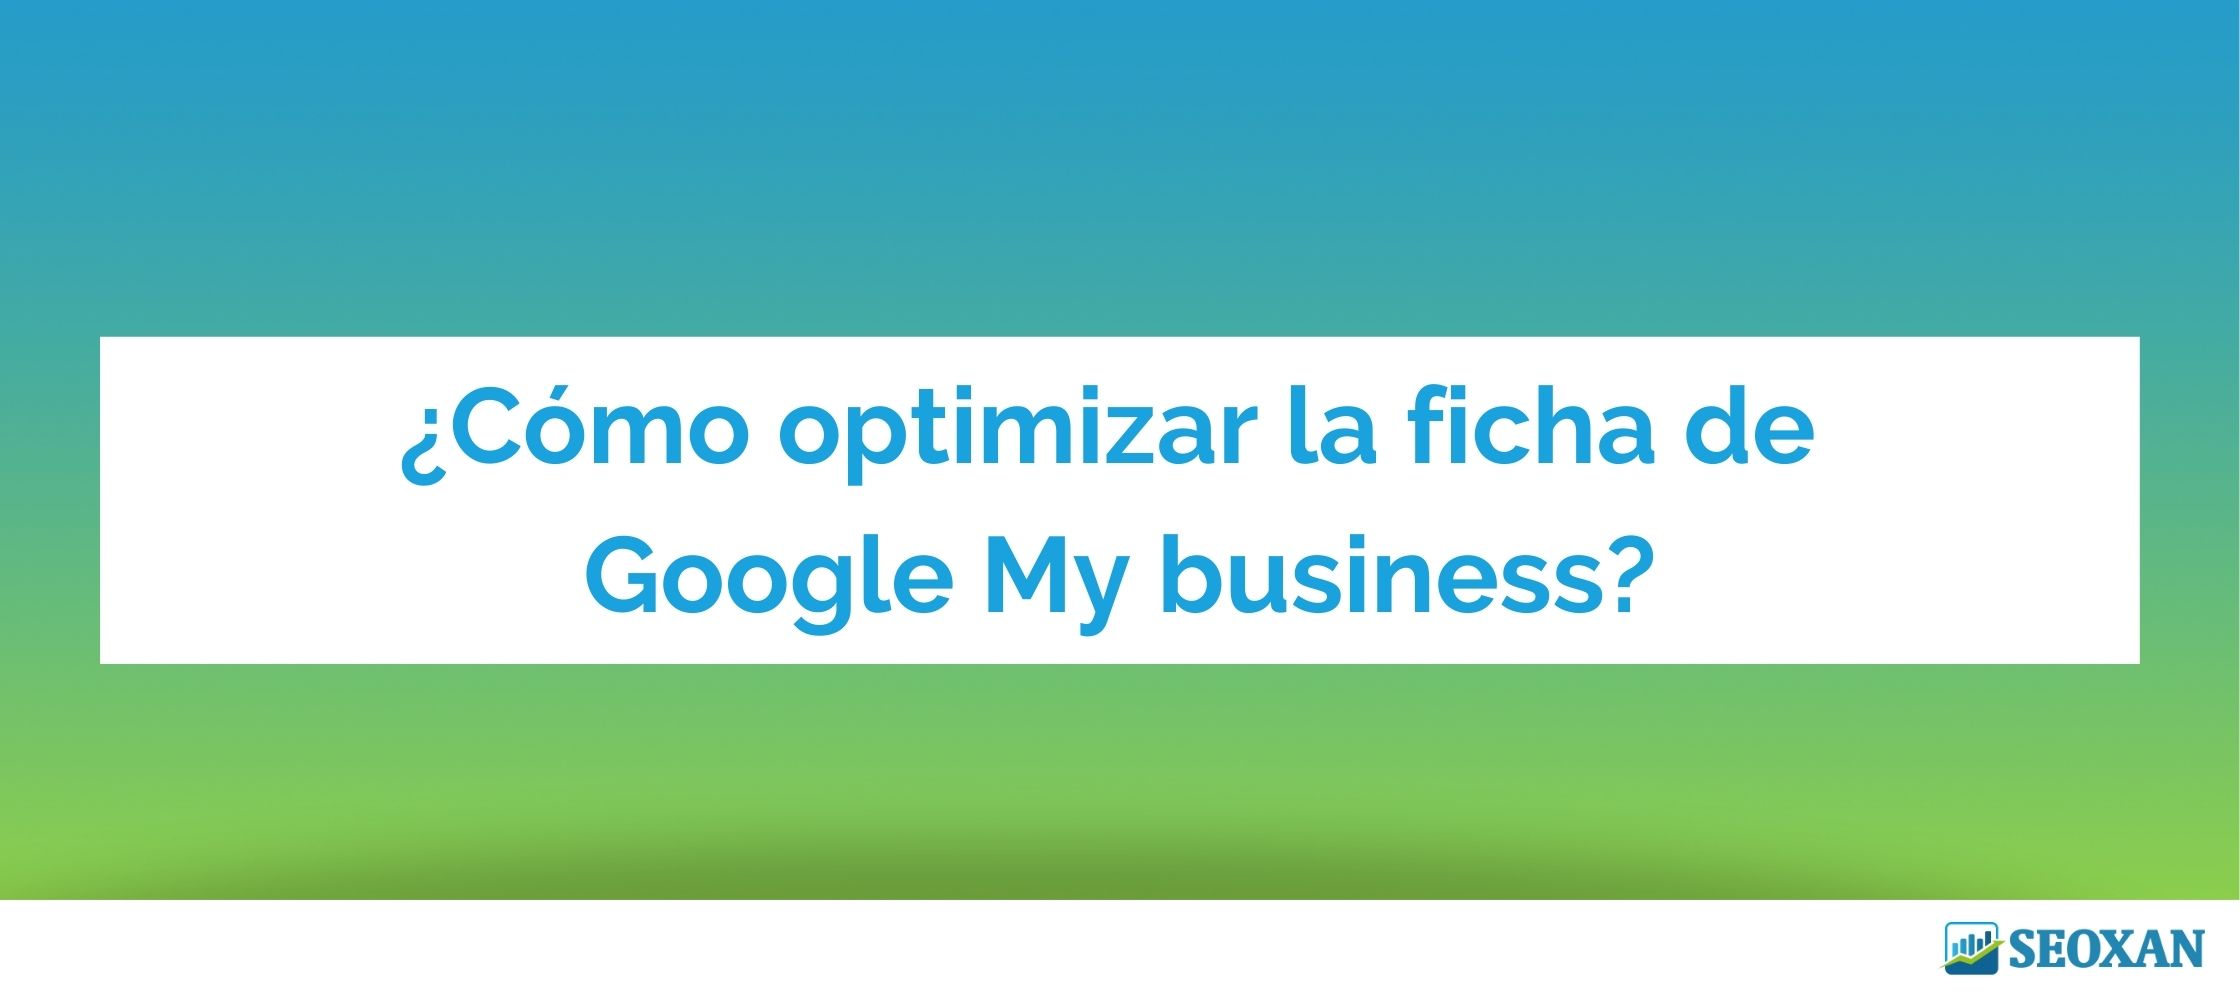 ¿Cómo optimizar la ficha de Google My business?